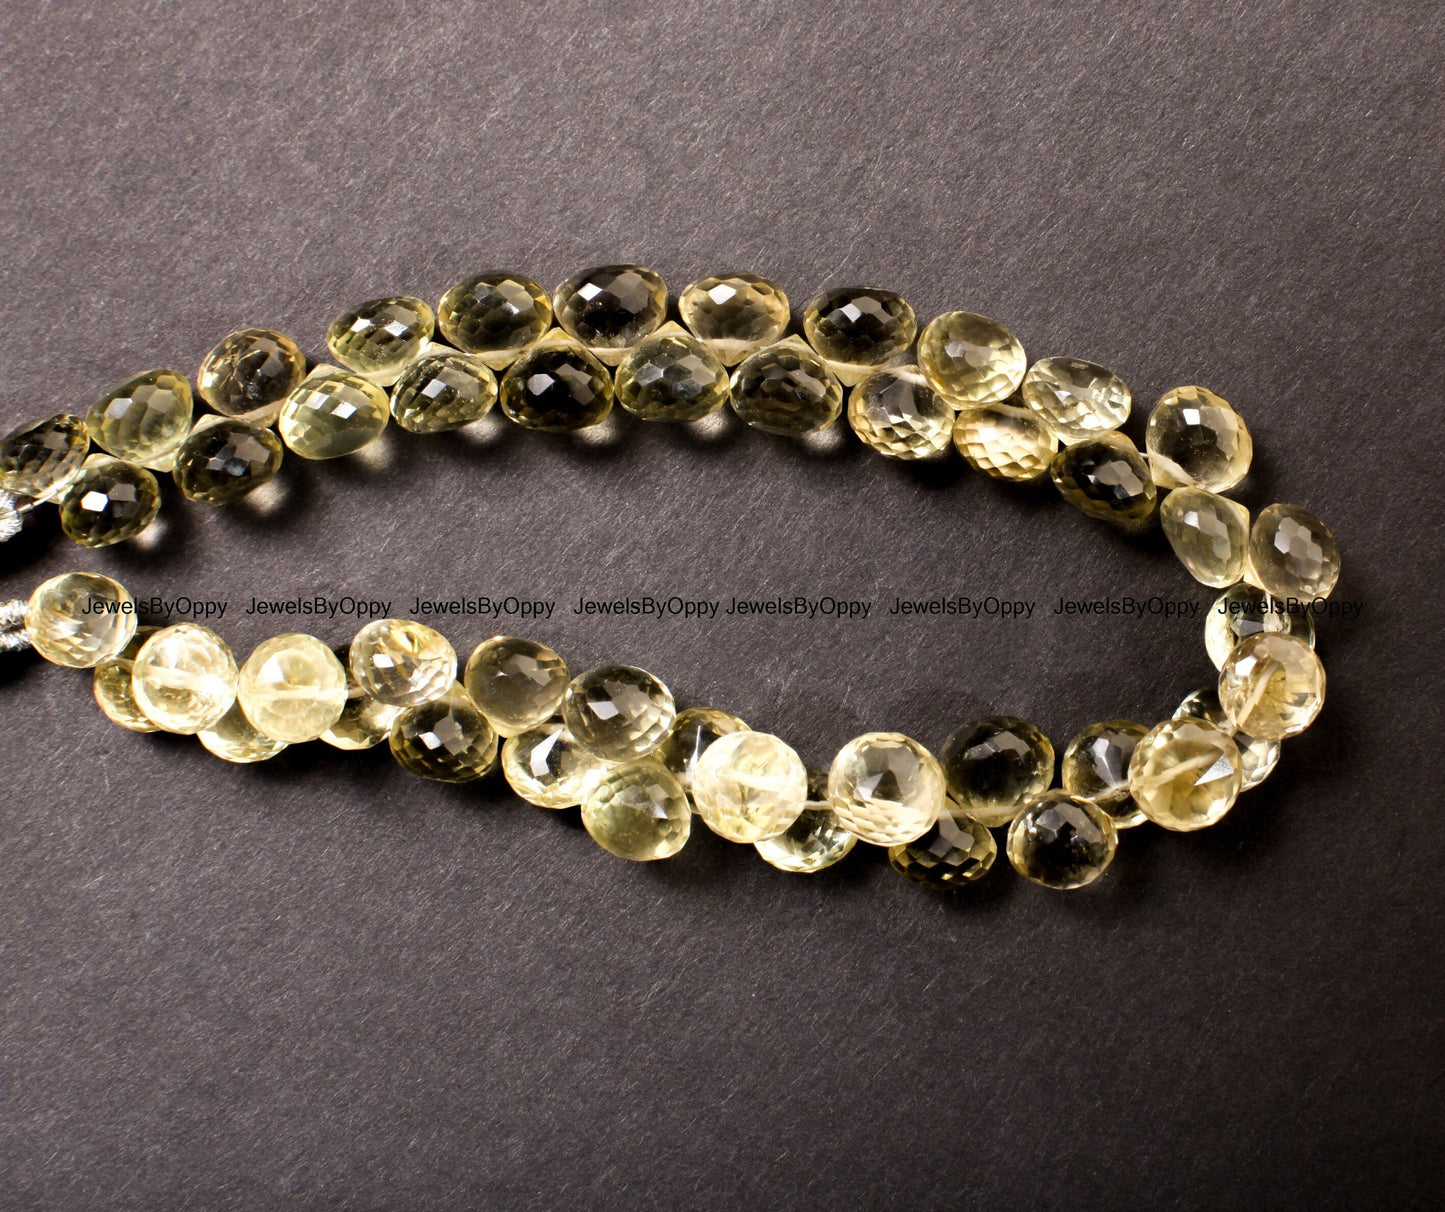 Lemon Quartz Faceted Onion Briolette 7.5-8.5mm, Natural AAA Quality Lemon Quartz Gemstone Beads Jewelry Making Necklace, Bracelet